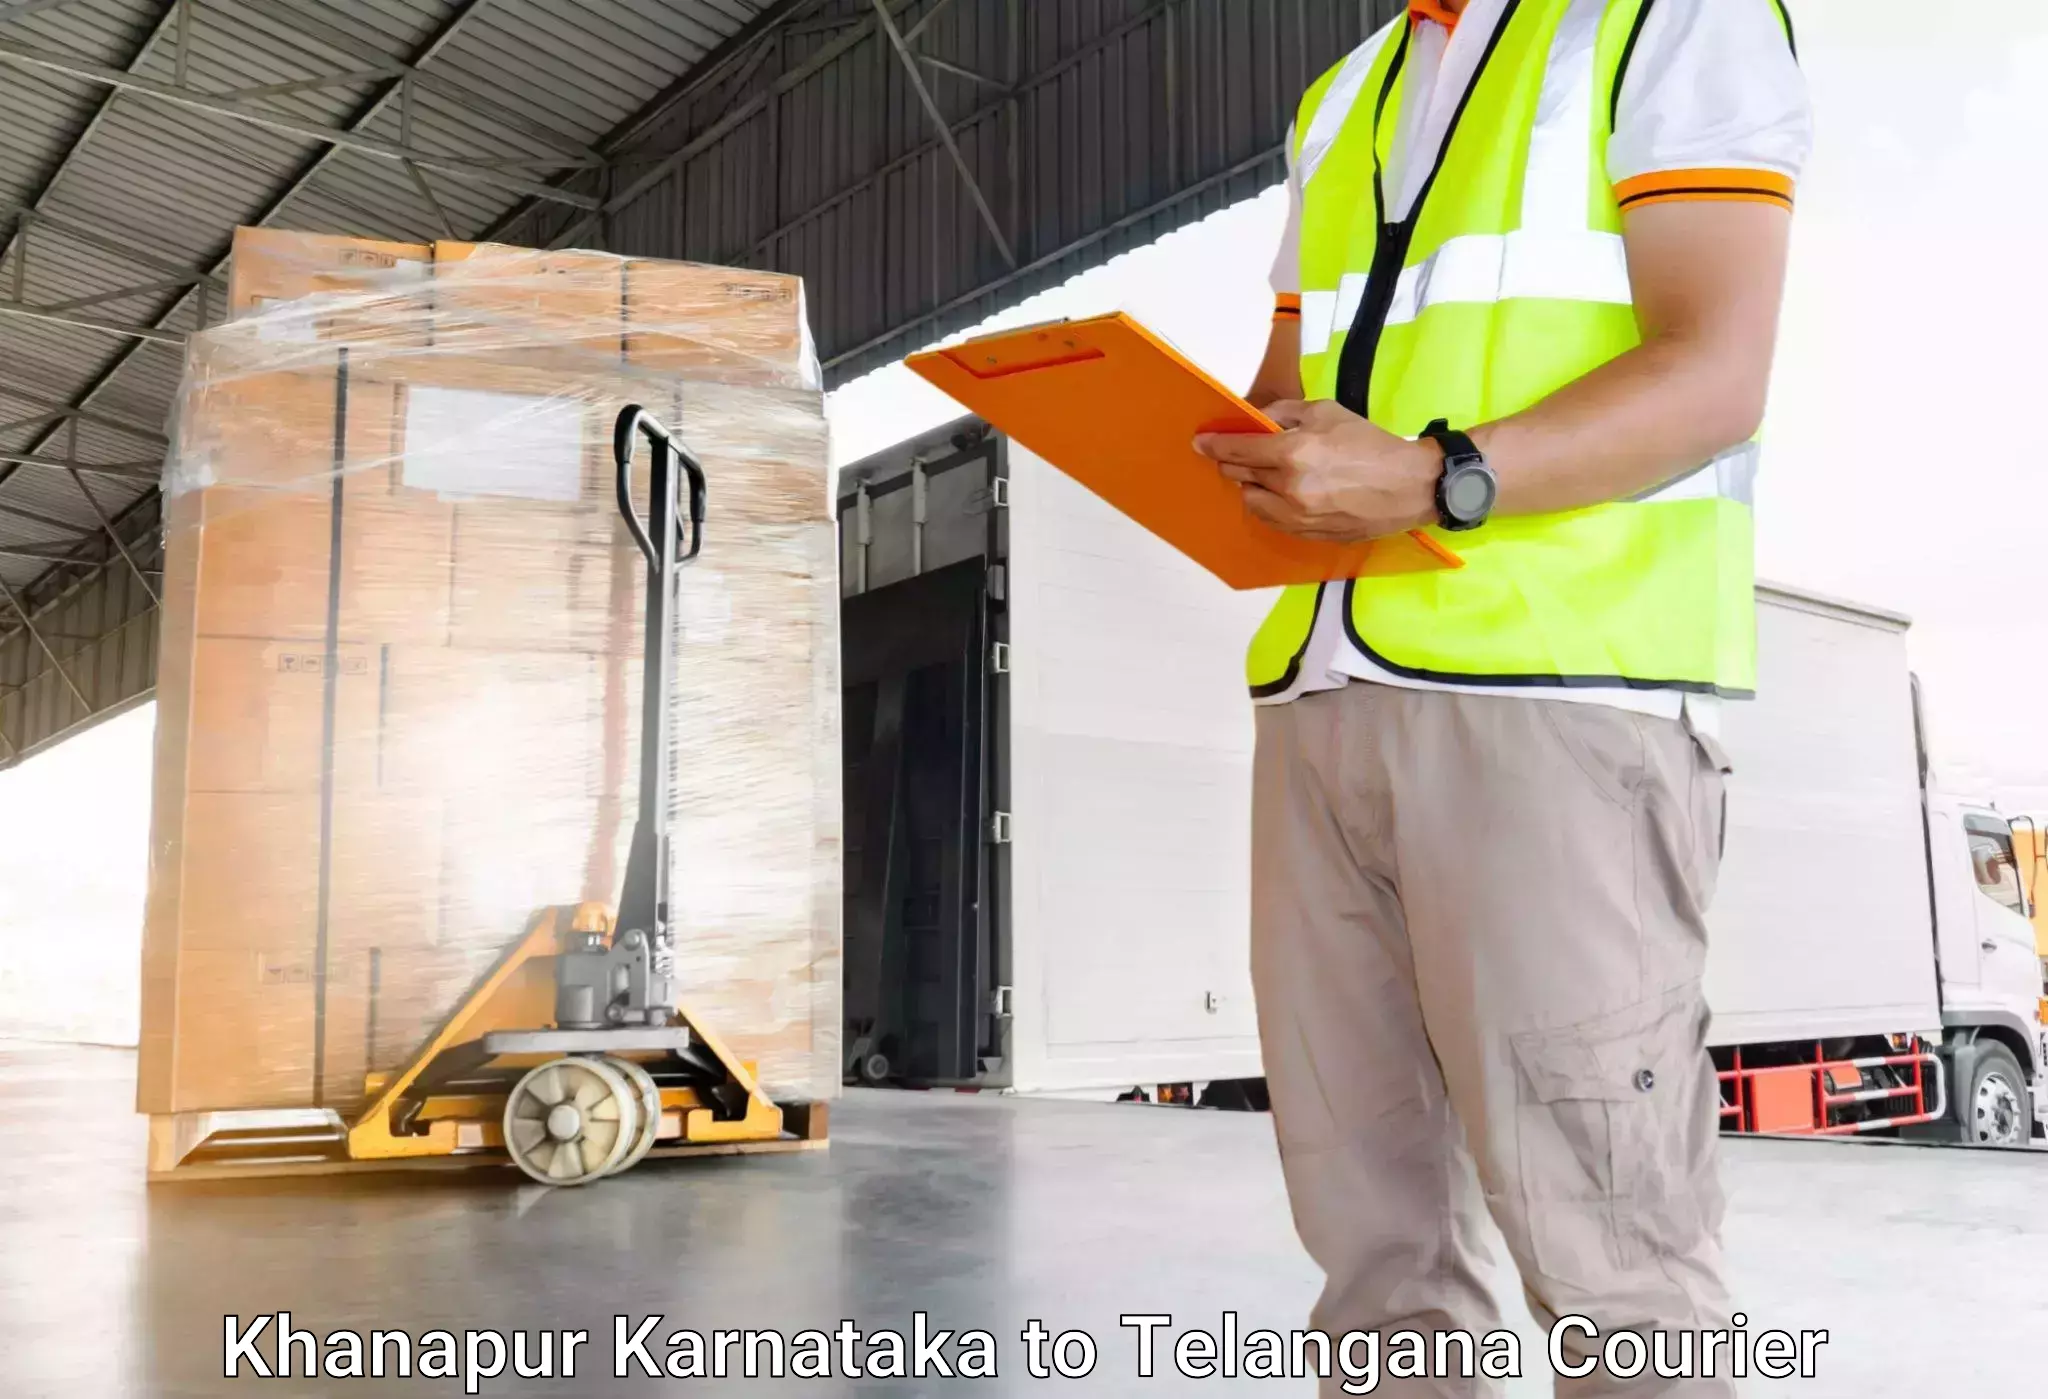 Luggage shipment processing Khanapur Karnataka to Hanamkonda